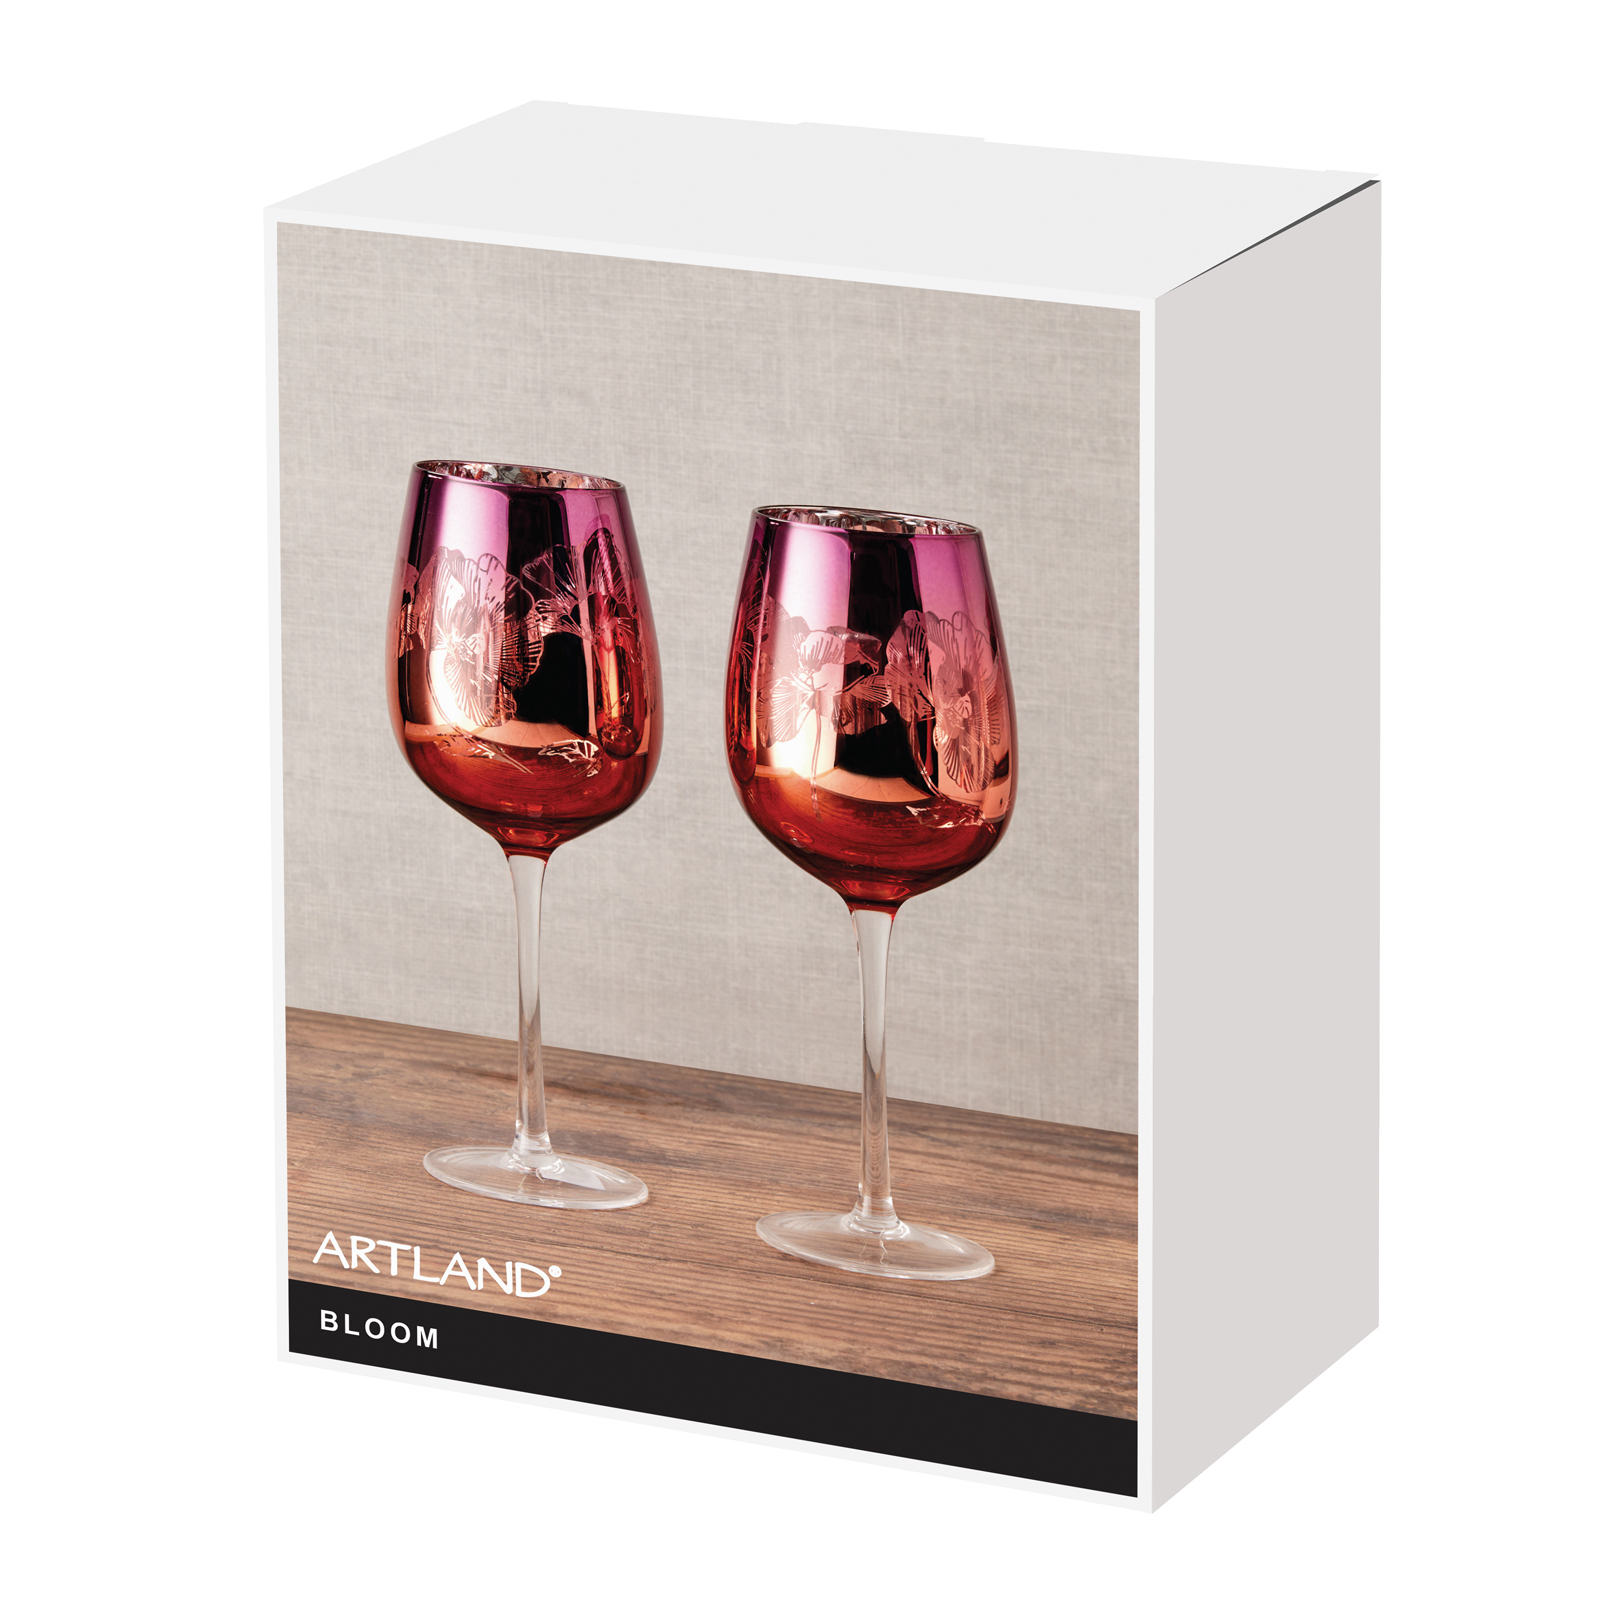 Visuel de Lot de 2 verres à vin by Artland - Bloom Magnifiquement décorés avec un design détaillé rose, orange et argent, ces délicats verres à vin comportent un bouquet de fleurs miroir, le tout sur un grand bol incurvé, et une tige haute pour une élégance ultime